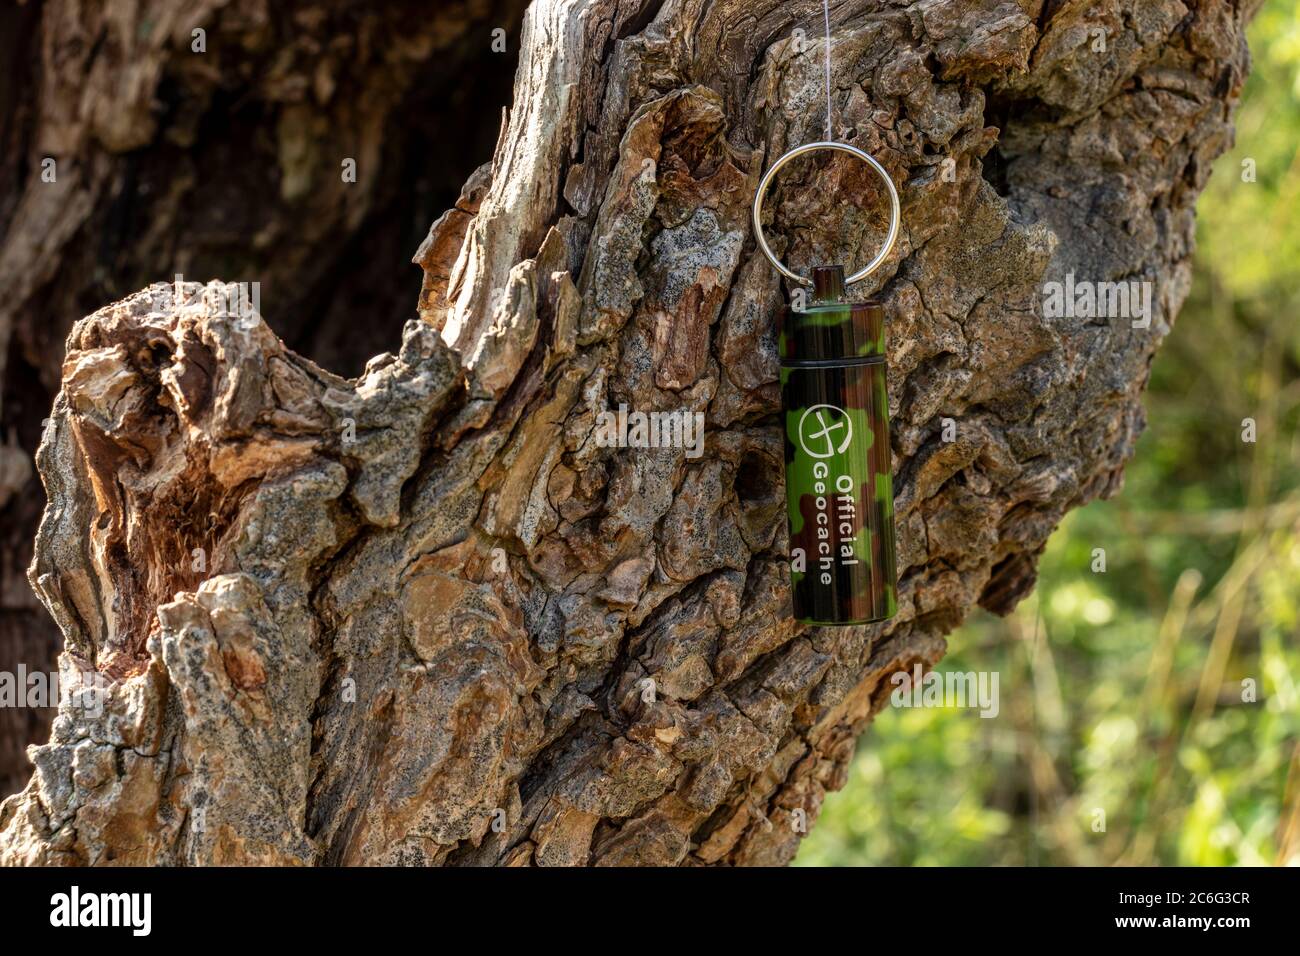 Un contenitore di geocaching nascosto in un moncone di albero cavo. La cache è sospesa da un filo di nylon. Foto Stock